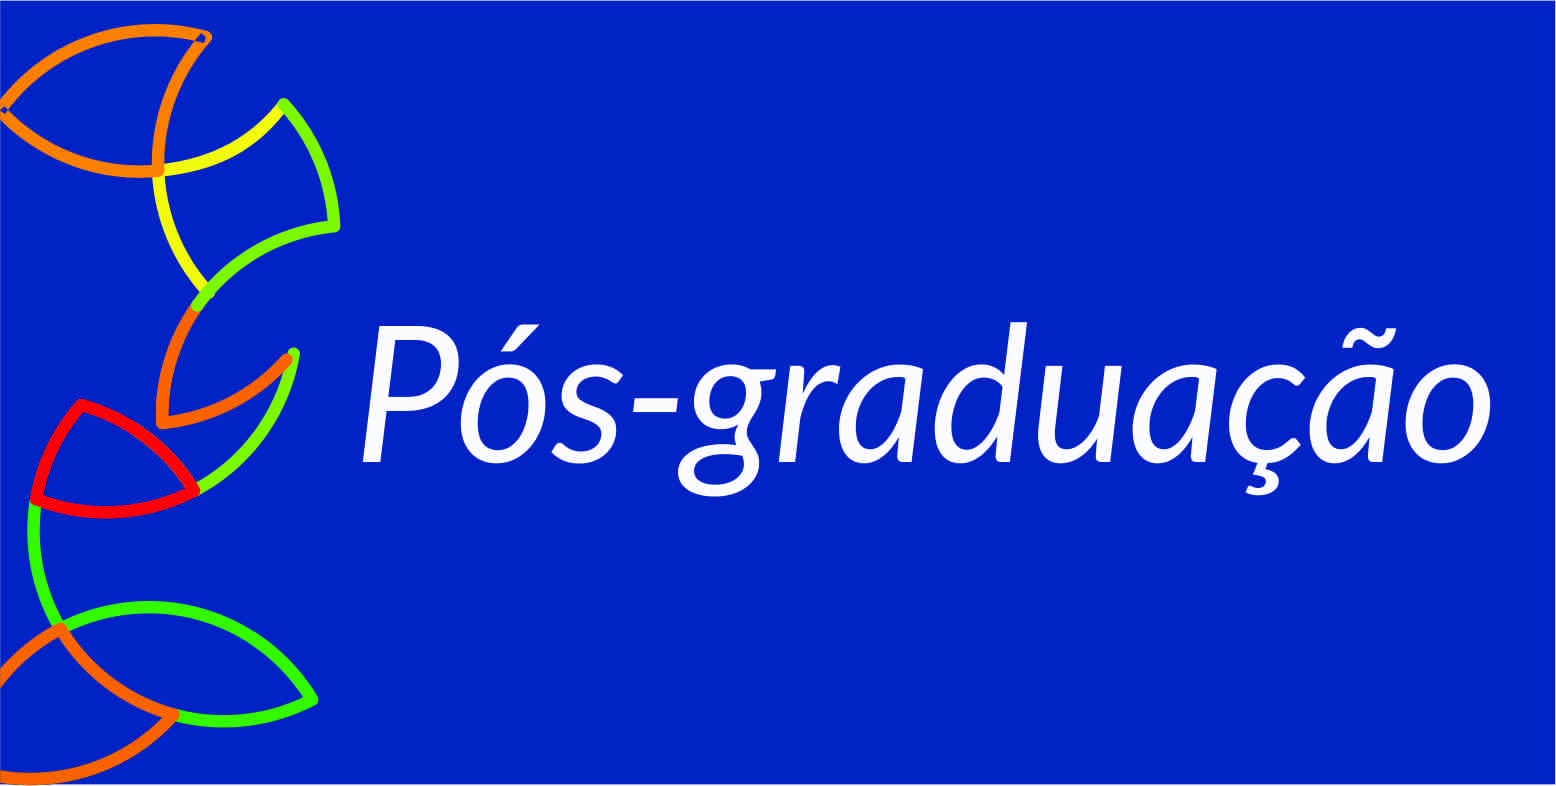 Calendario 2023 - Graduacao - Campus Paracambi